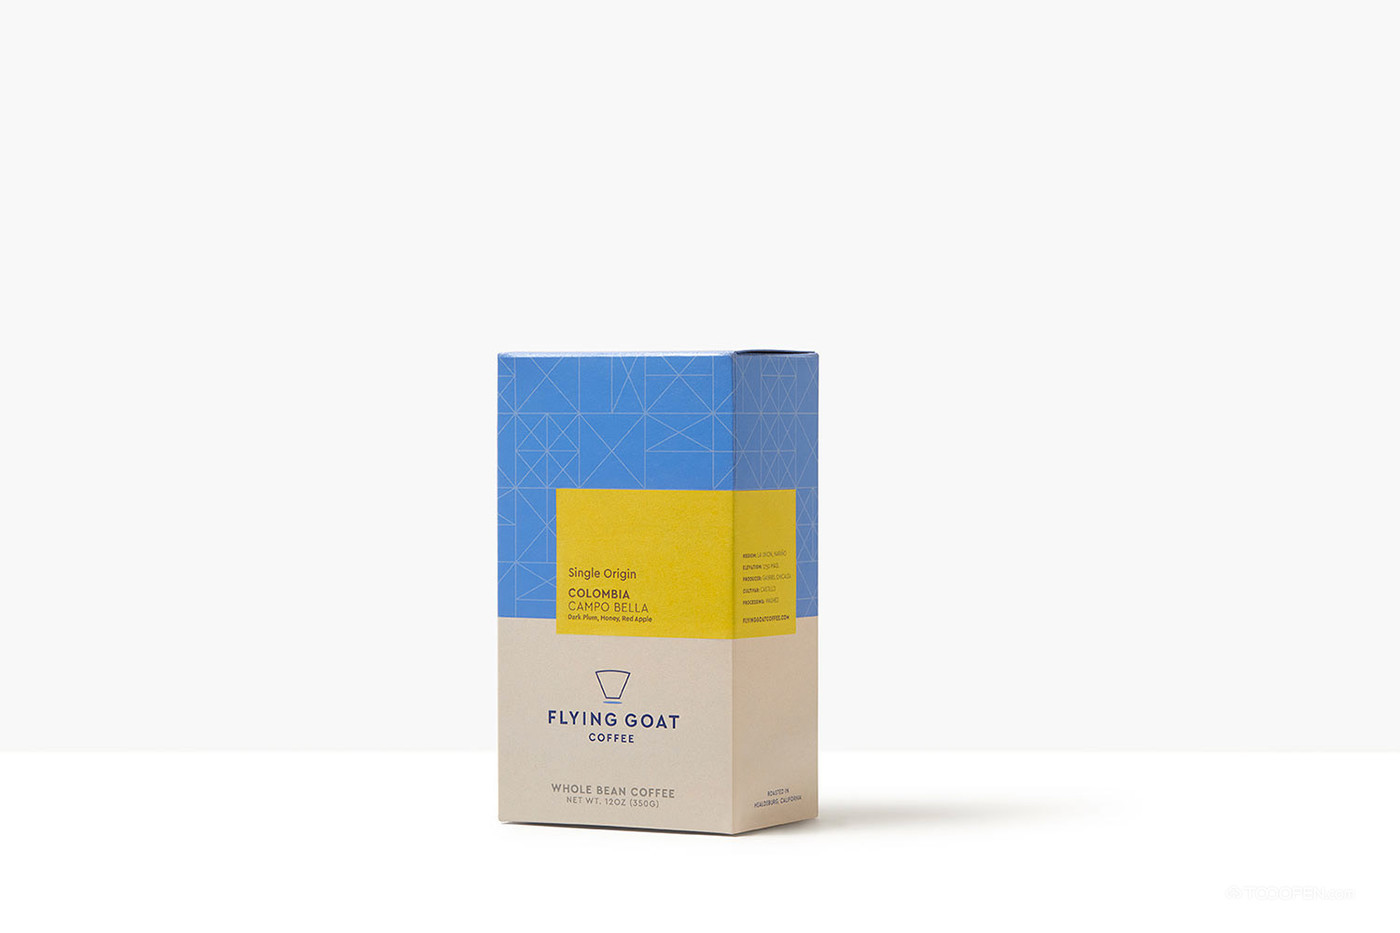 FLYINGGOAT便捷咖啡包装设计欣赏-03